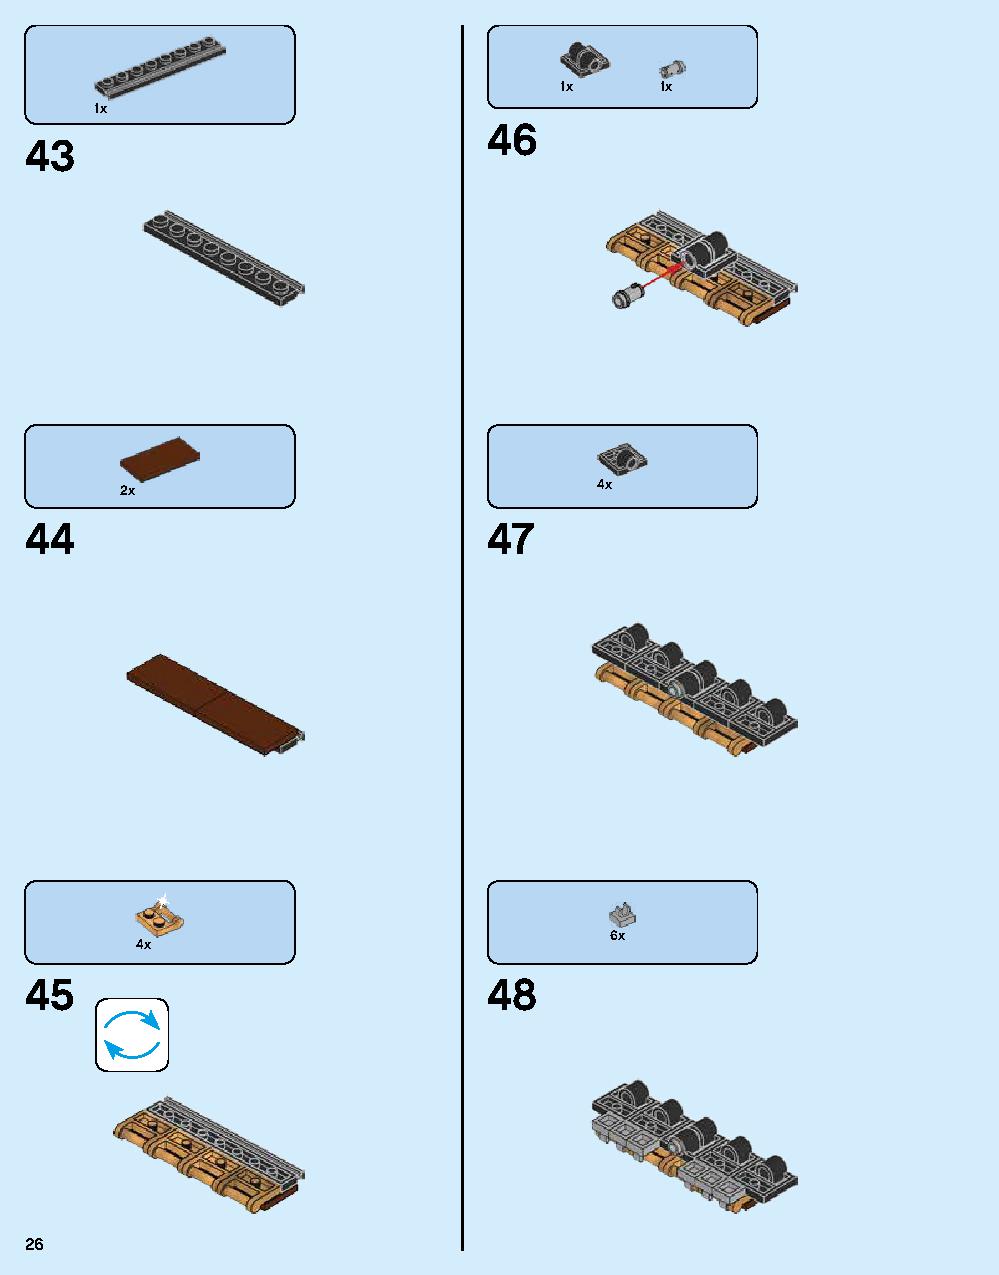 ニンジャゴー シティ 70620 レゴの商品情報 レゴの説明書・組立方法 26 page